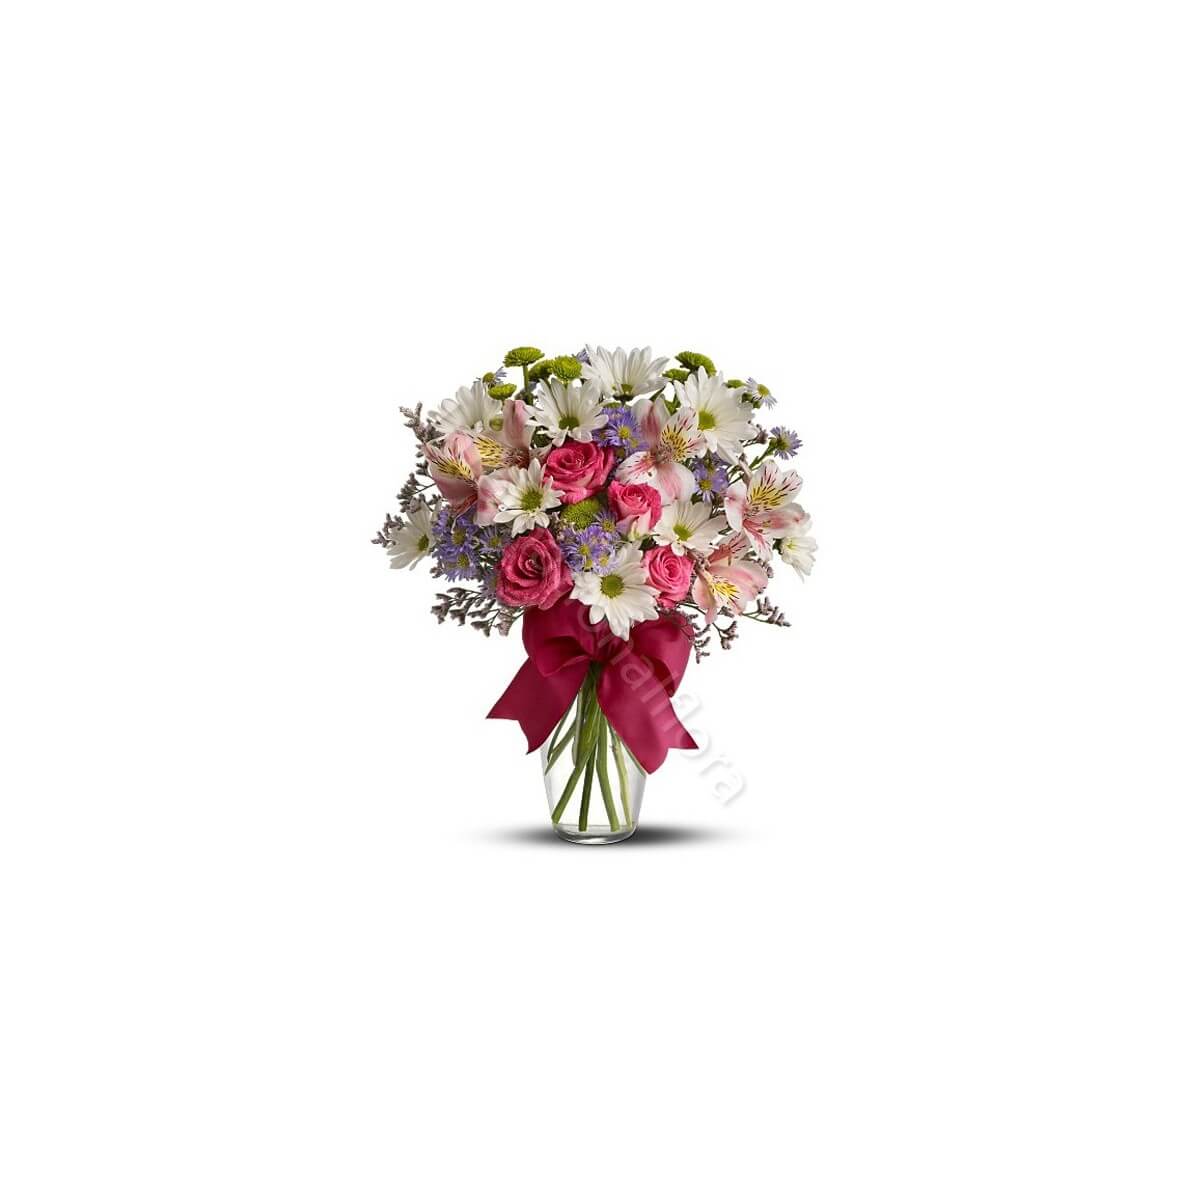 Bouquet beautiful di Fiori misti dai toni 
pastello